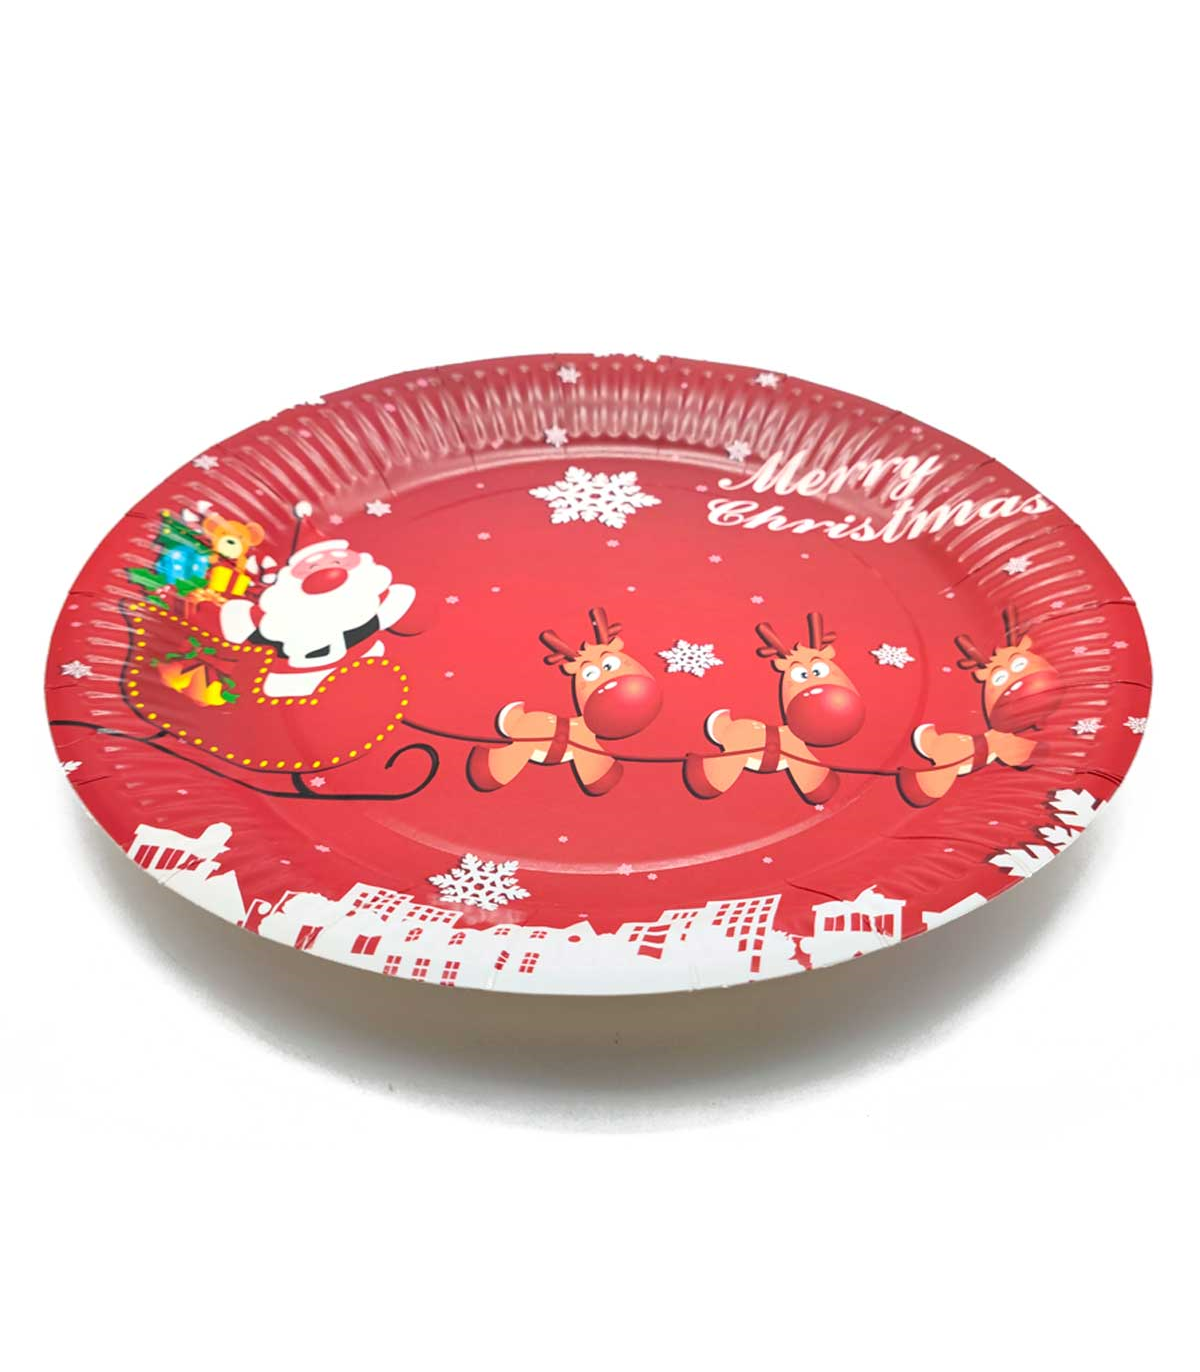 Tradineur - Pack de platos de cartón con decoración navideña - 6